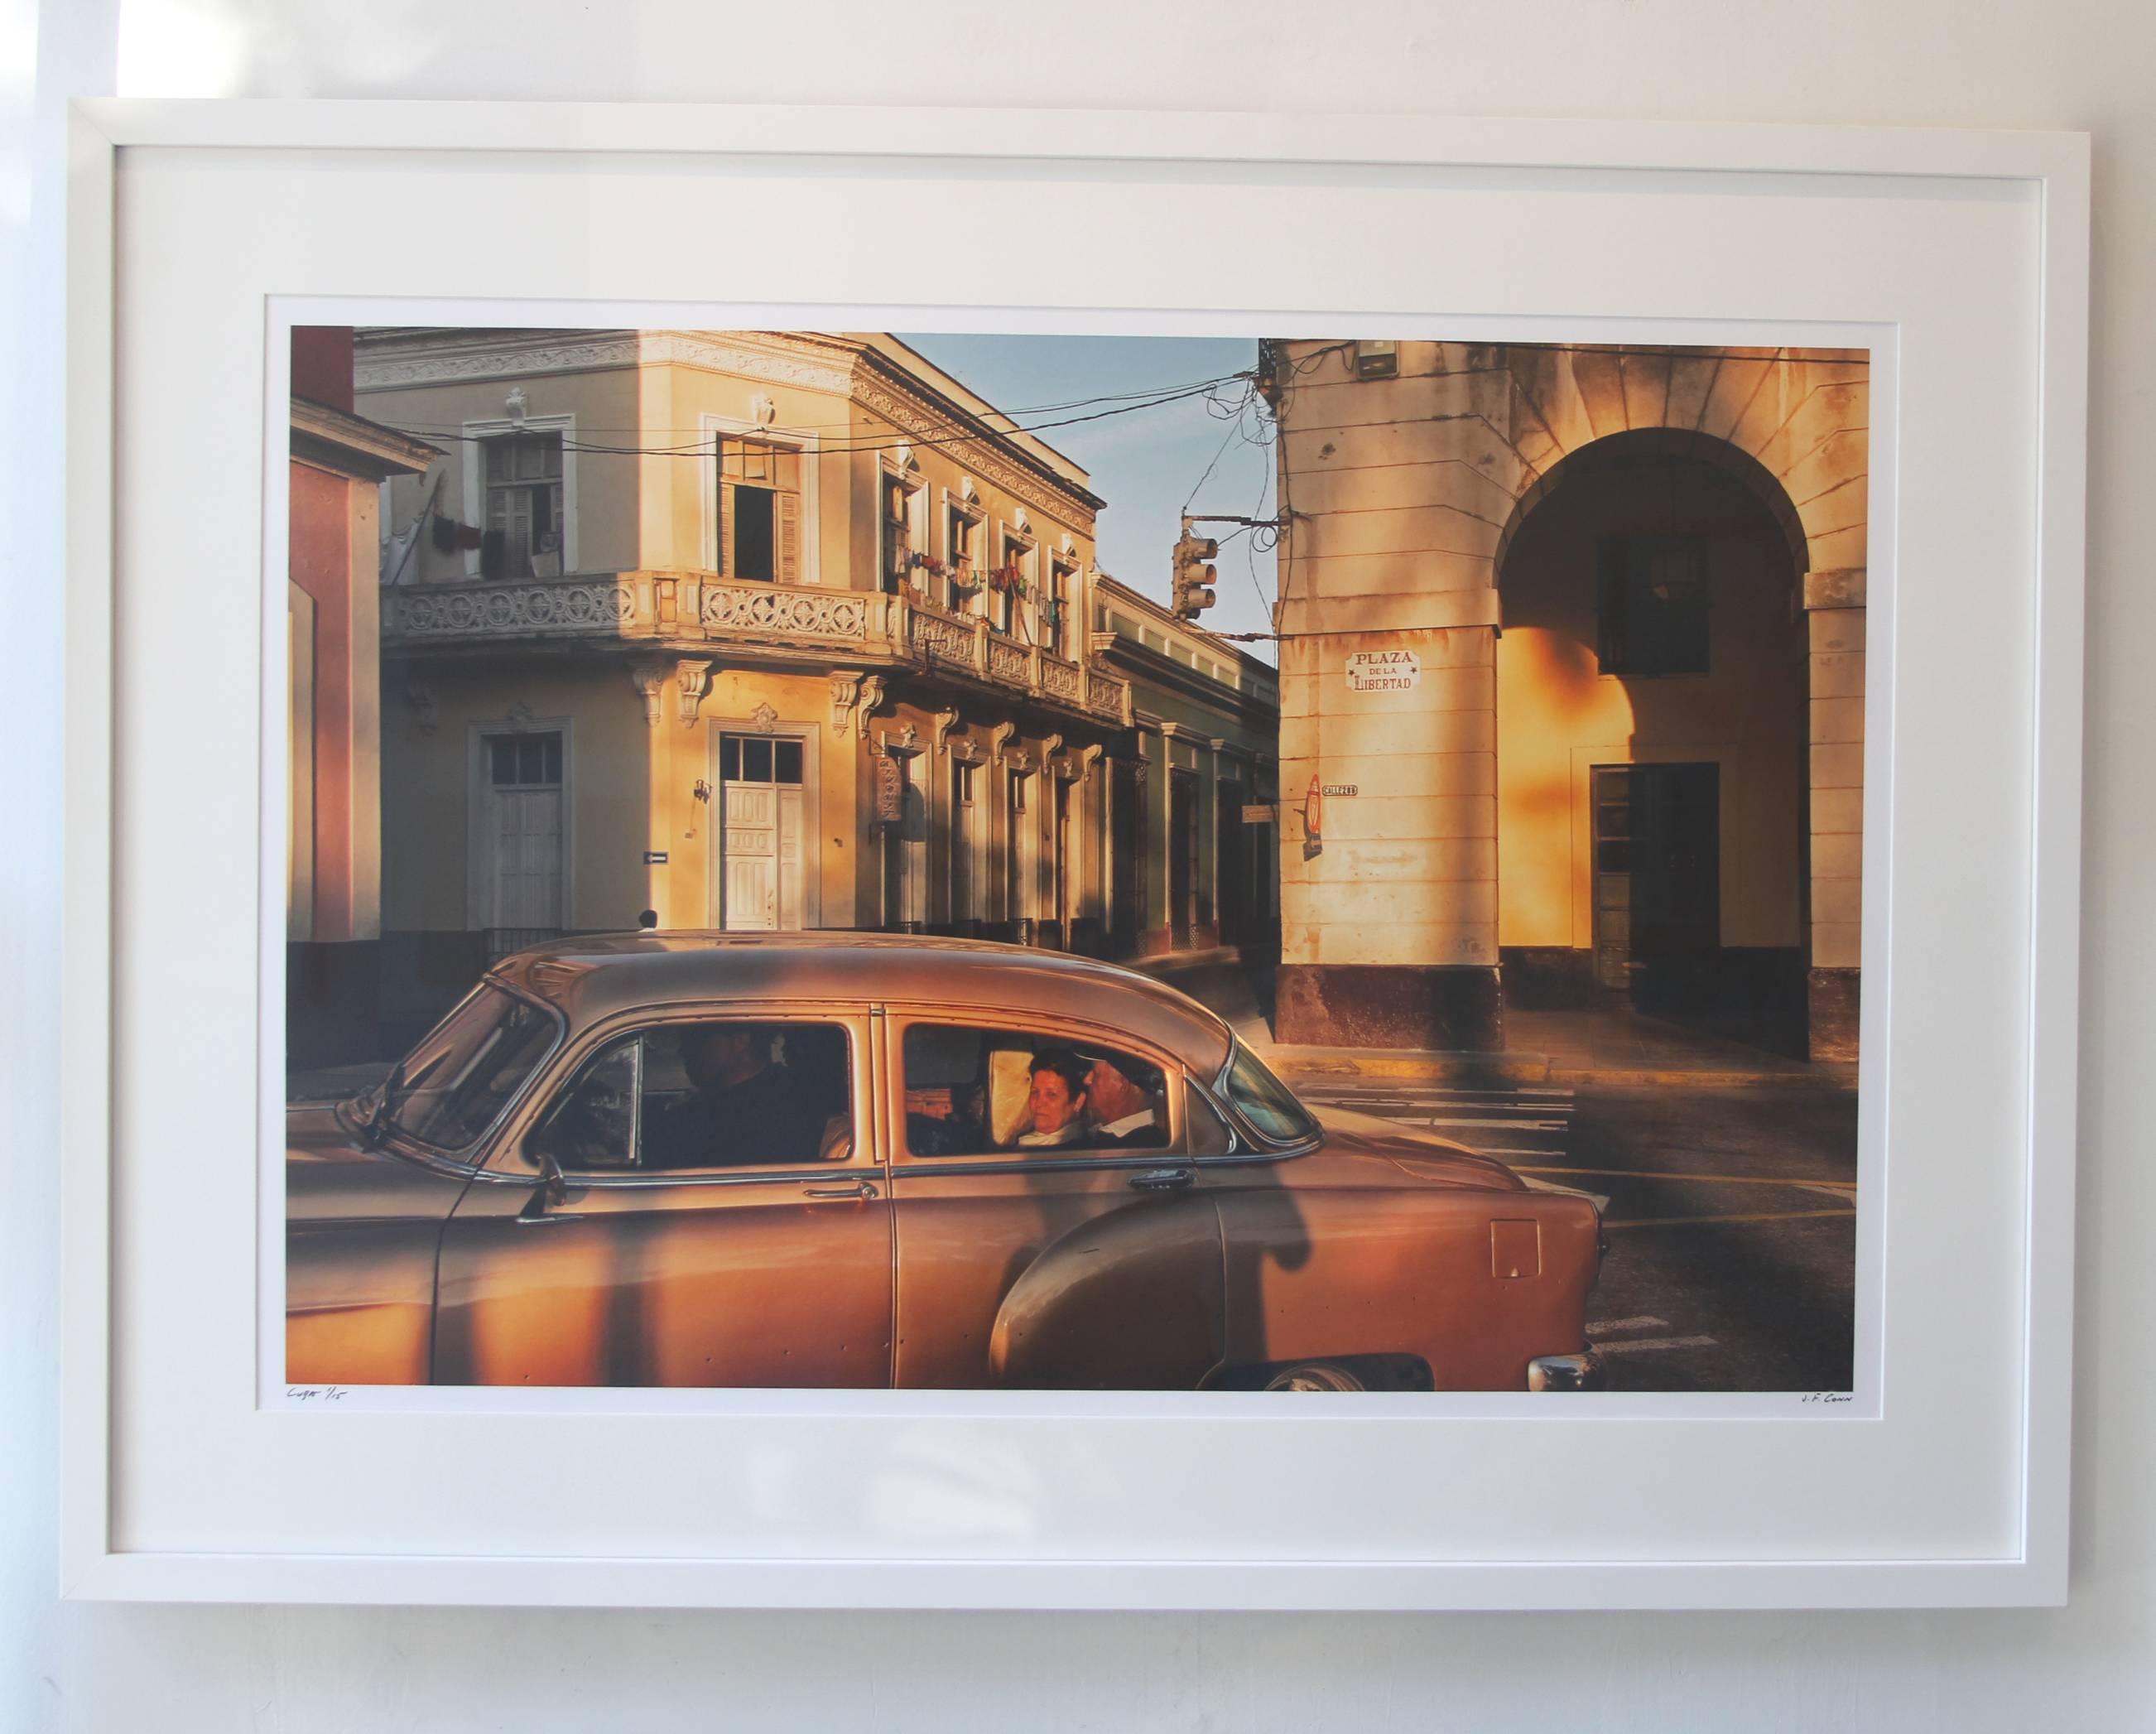 Cuba 4, Vintage Car, Travel, Gold, Cityscape, Architecture, Cuba, Color Photo